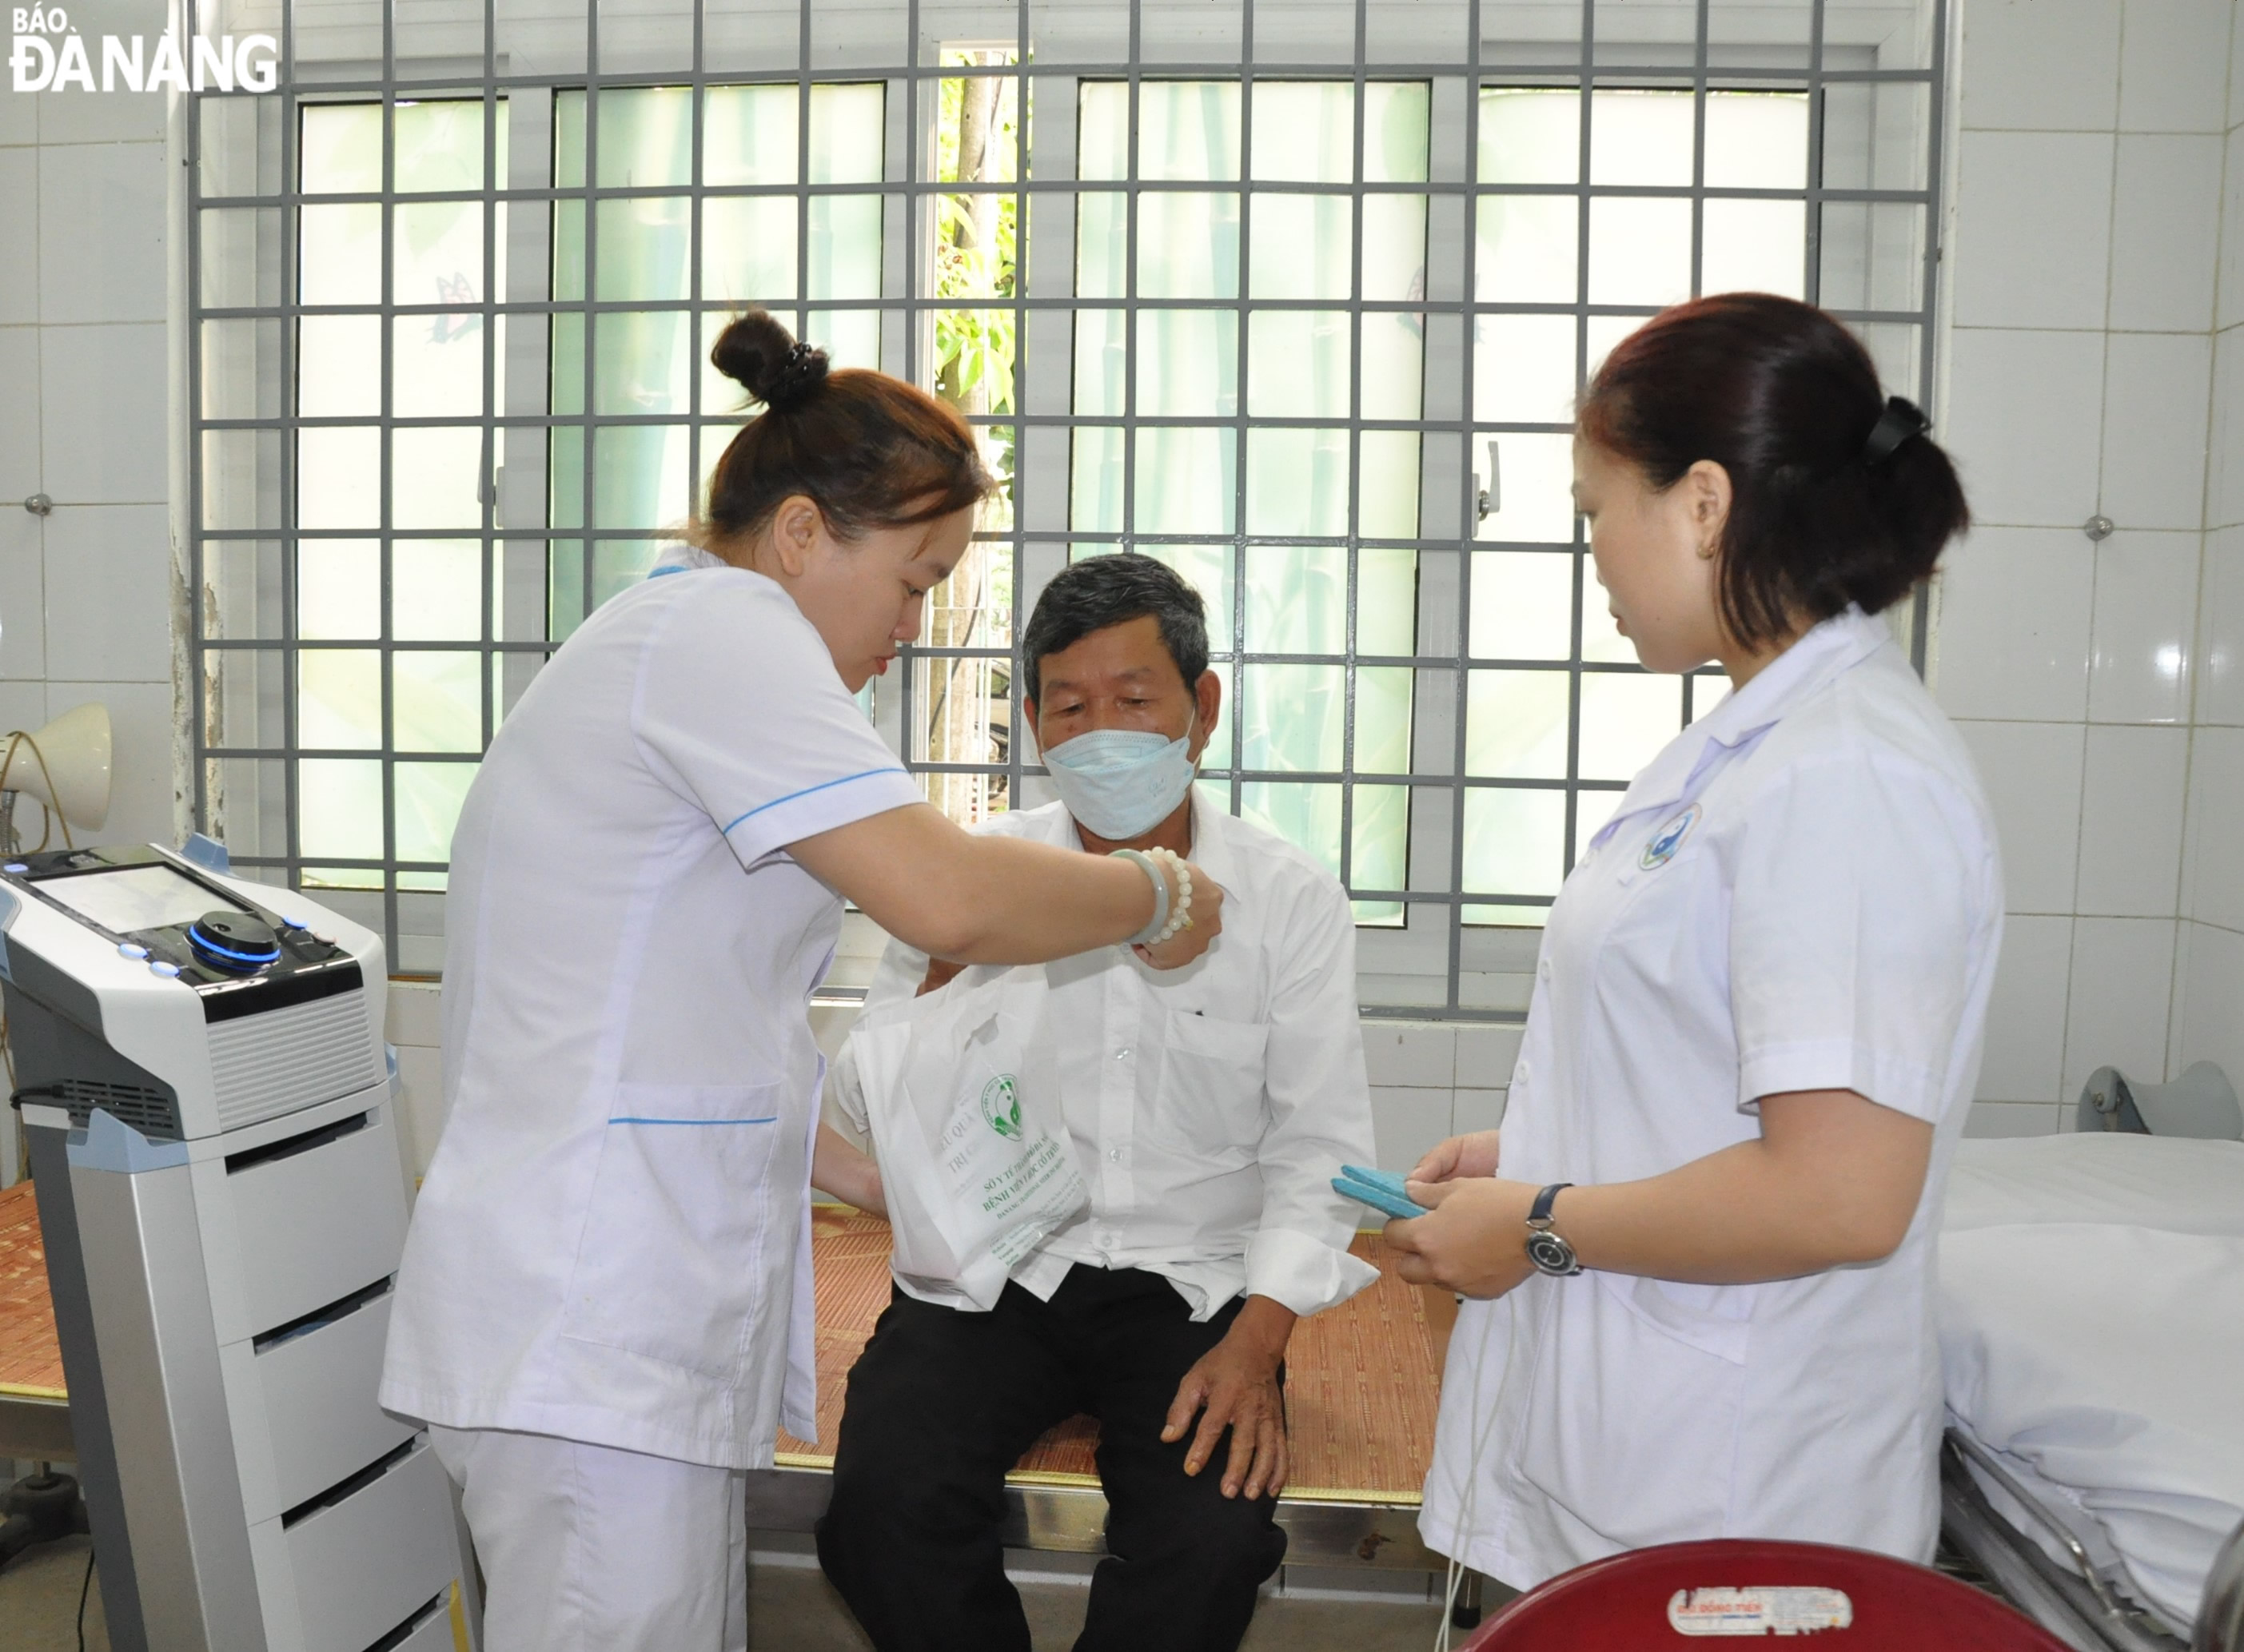 Ngoài việc khám bệnh, tư vấn sức khỏe, Bệnh viện Y học cổ truyền Đà Nẵng còn phát thuốc miễn phí cho đối tượng chính sách tại xã Hòa Phú. Ảnh: LÊ HÙNG